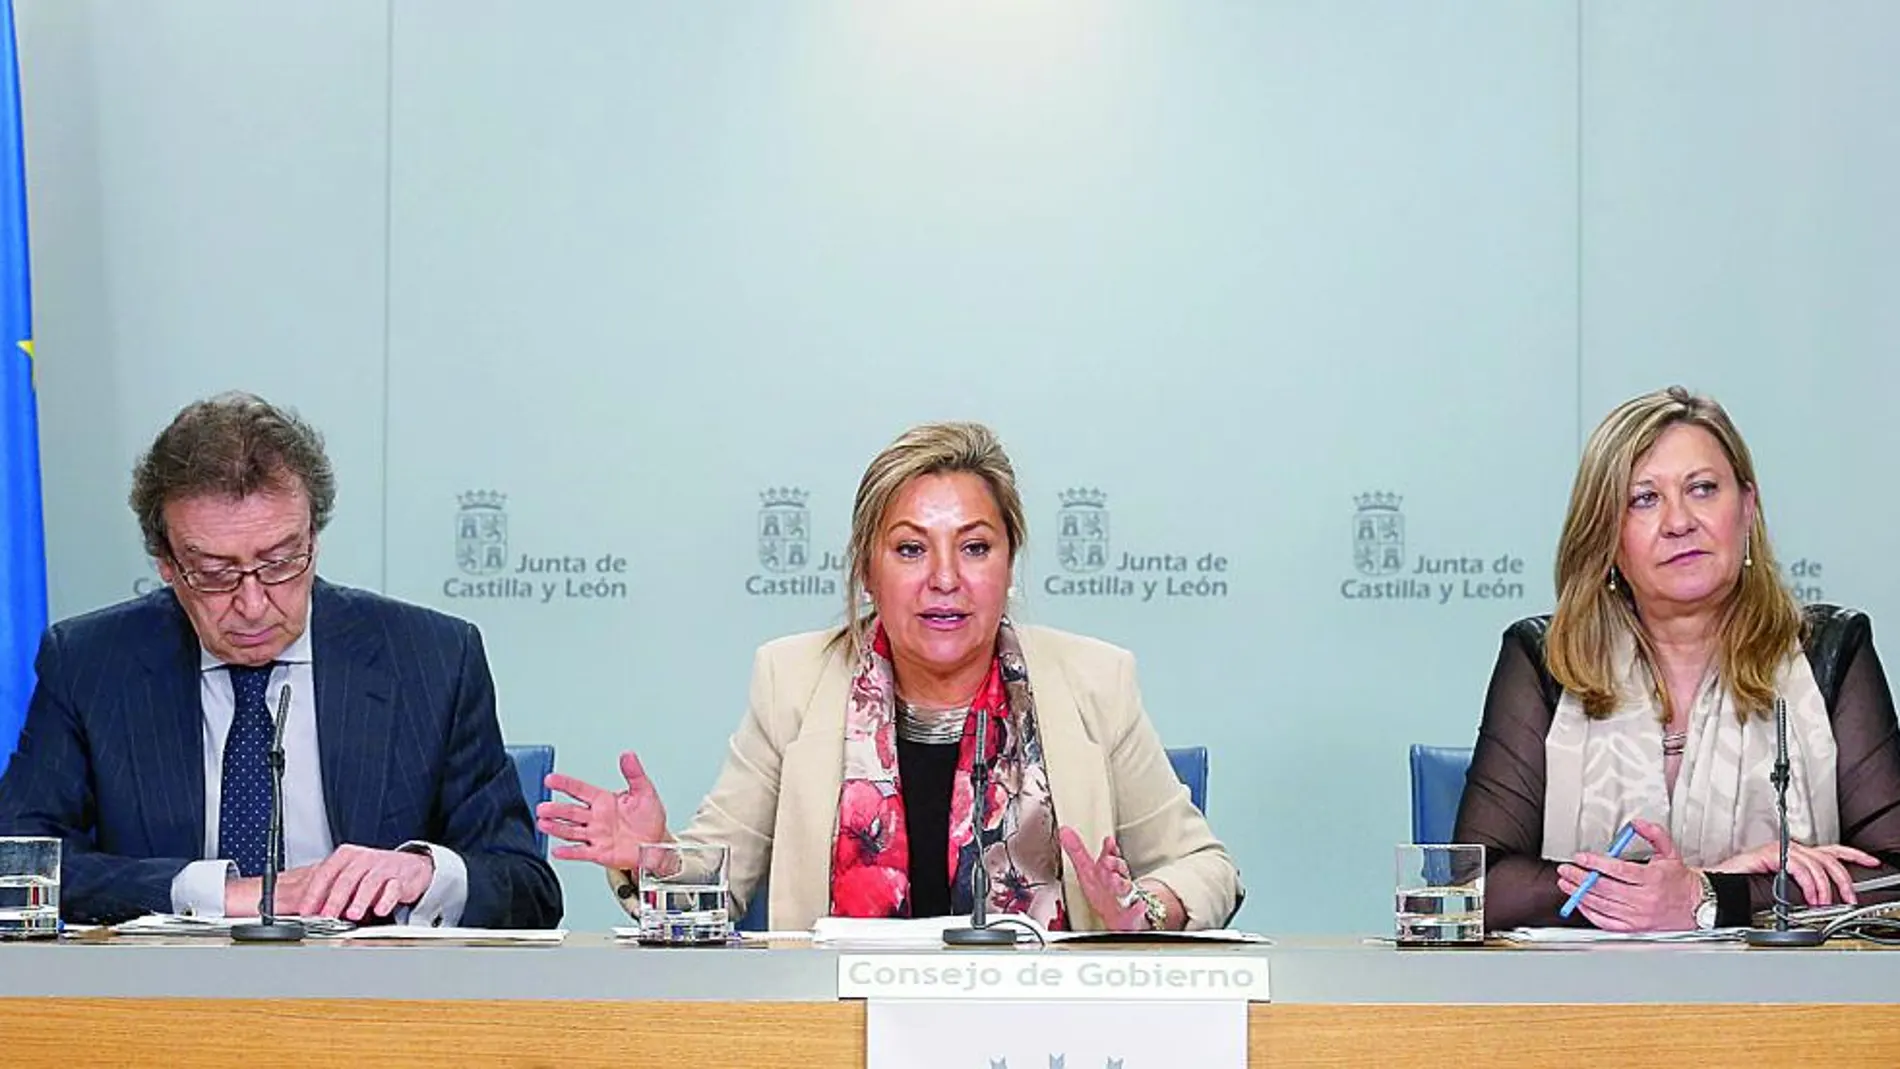 La vicepresidenta Rosa Valdeón y los consejeros José Antonio de Santiago-Juárez y Pilar del Olmo, explican los acuerdos del Consejo de Gobierno